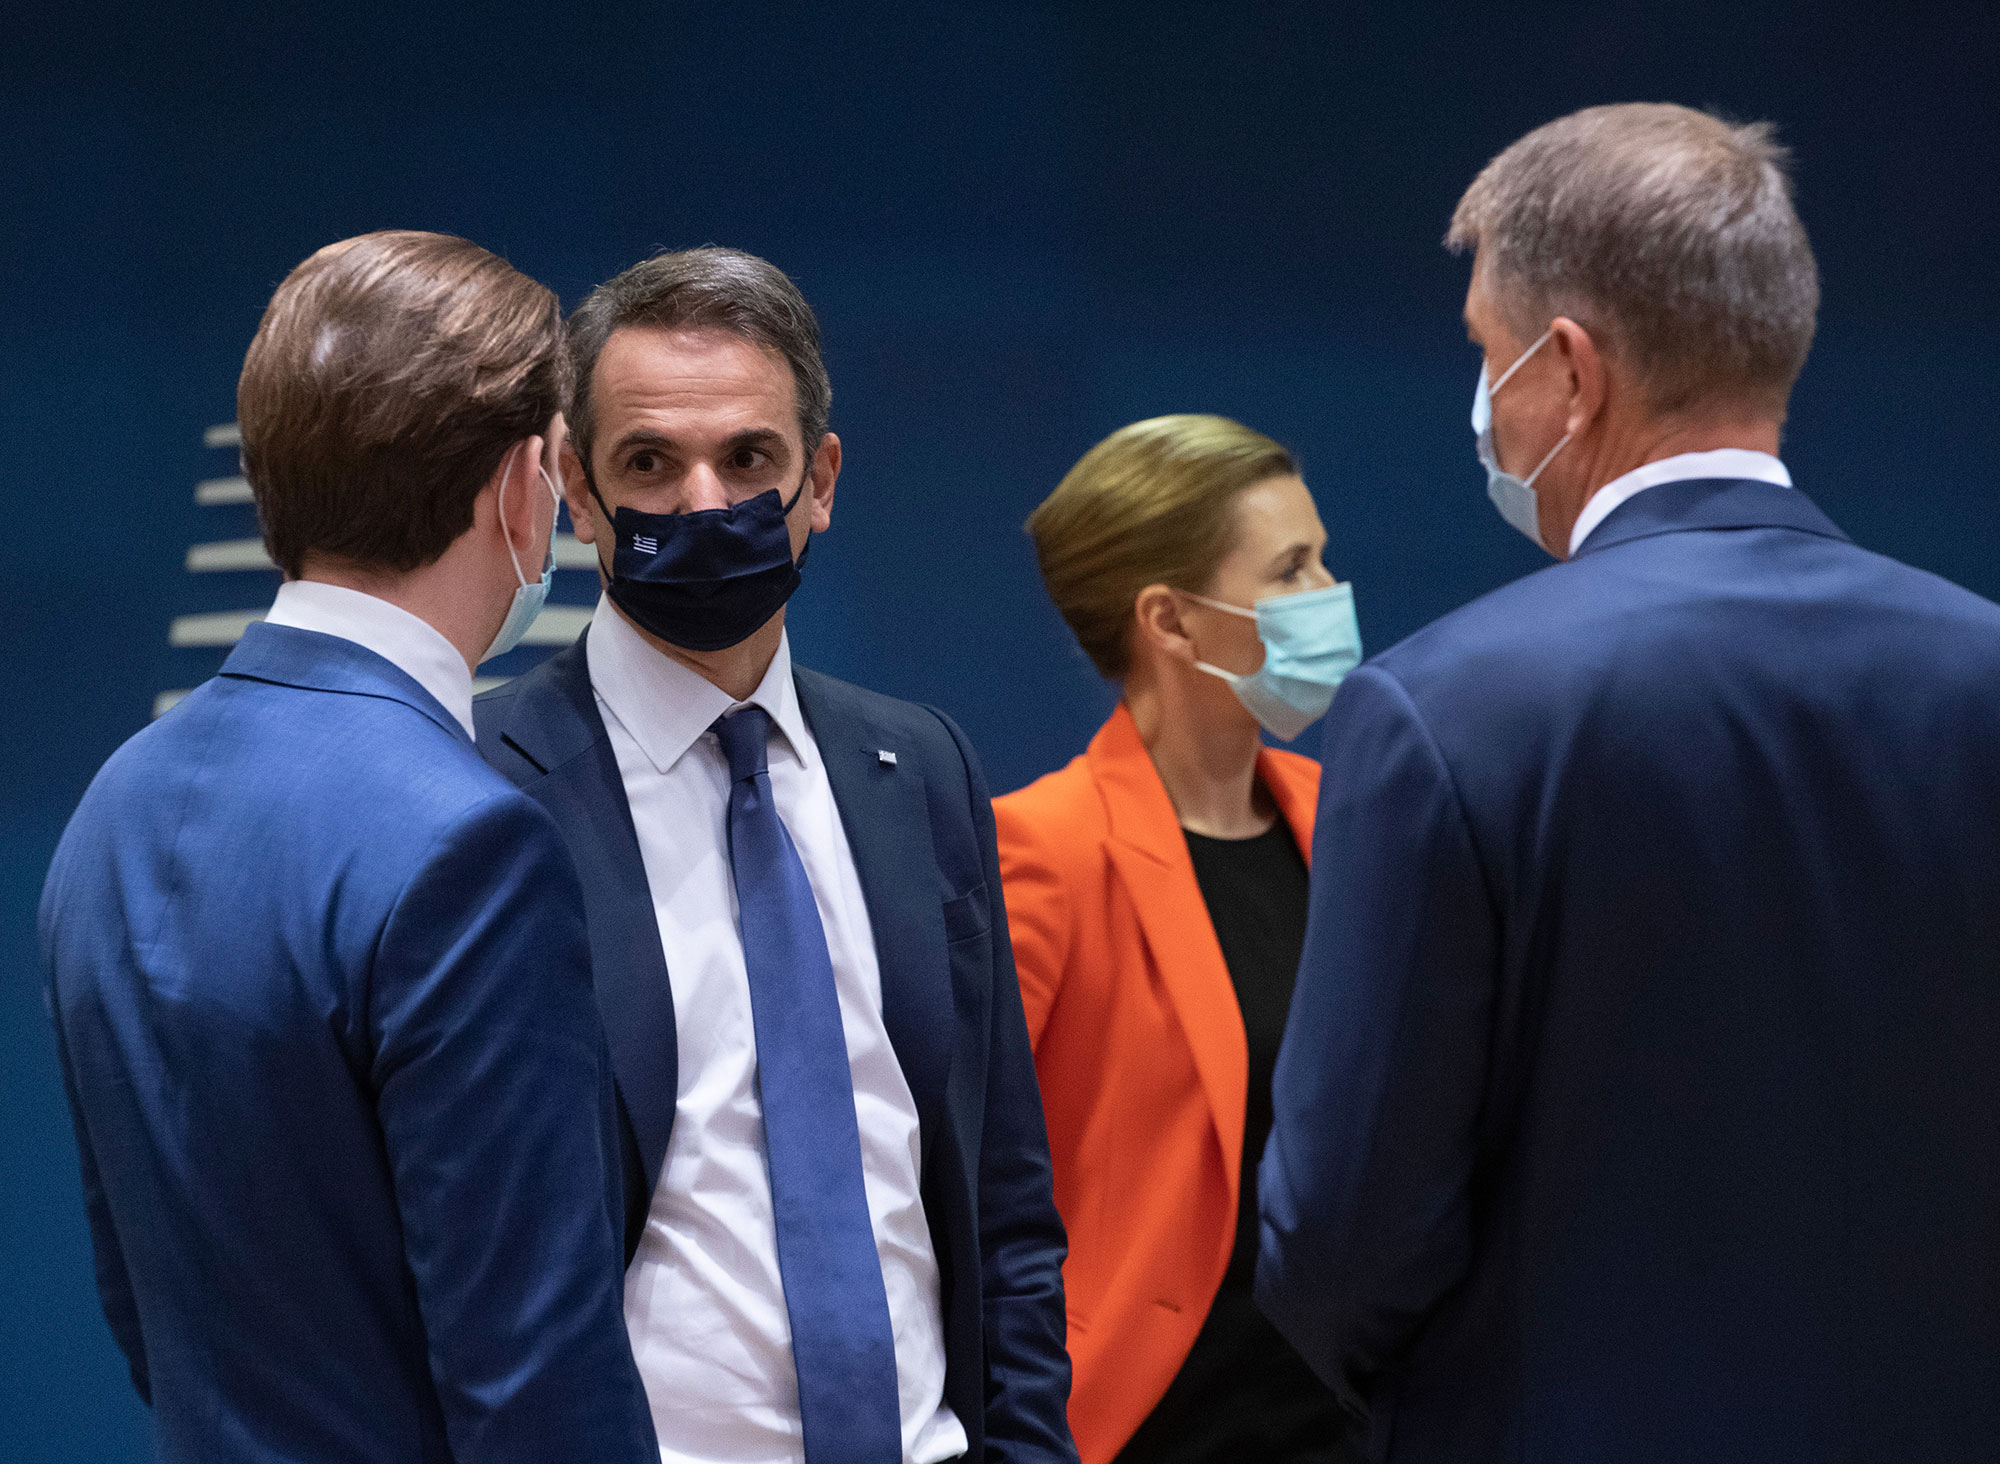 Ο πρωθυπουργός Κυριάκος Μητσοτάκης συνομιλεί με τον καγκελάριο της Αυστρίας Σεμπάστιαν Κουρτς στη Σύνοδο Κορυφής της ΕΕ στις Βρυξέλλες